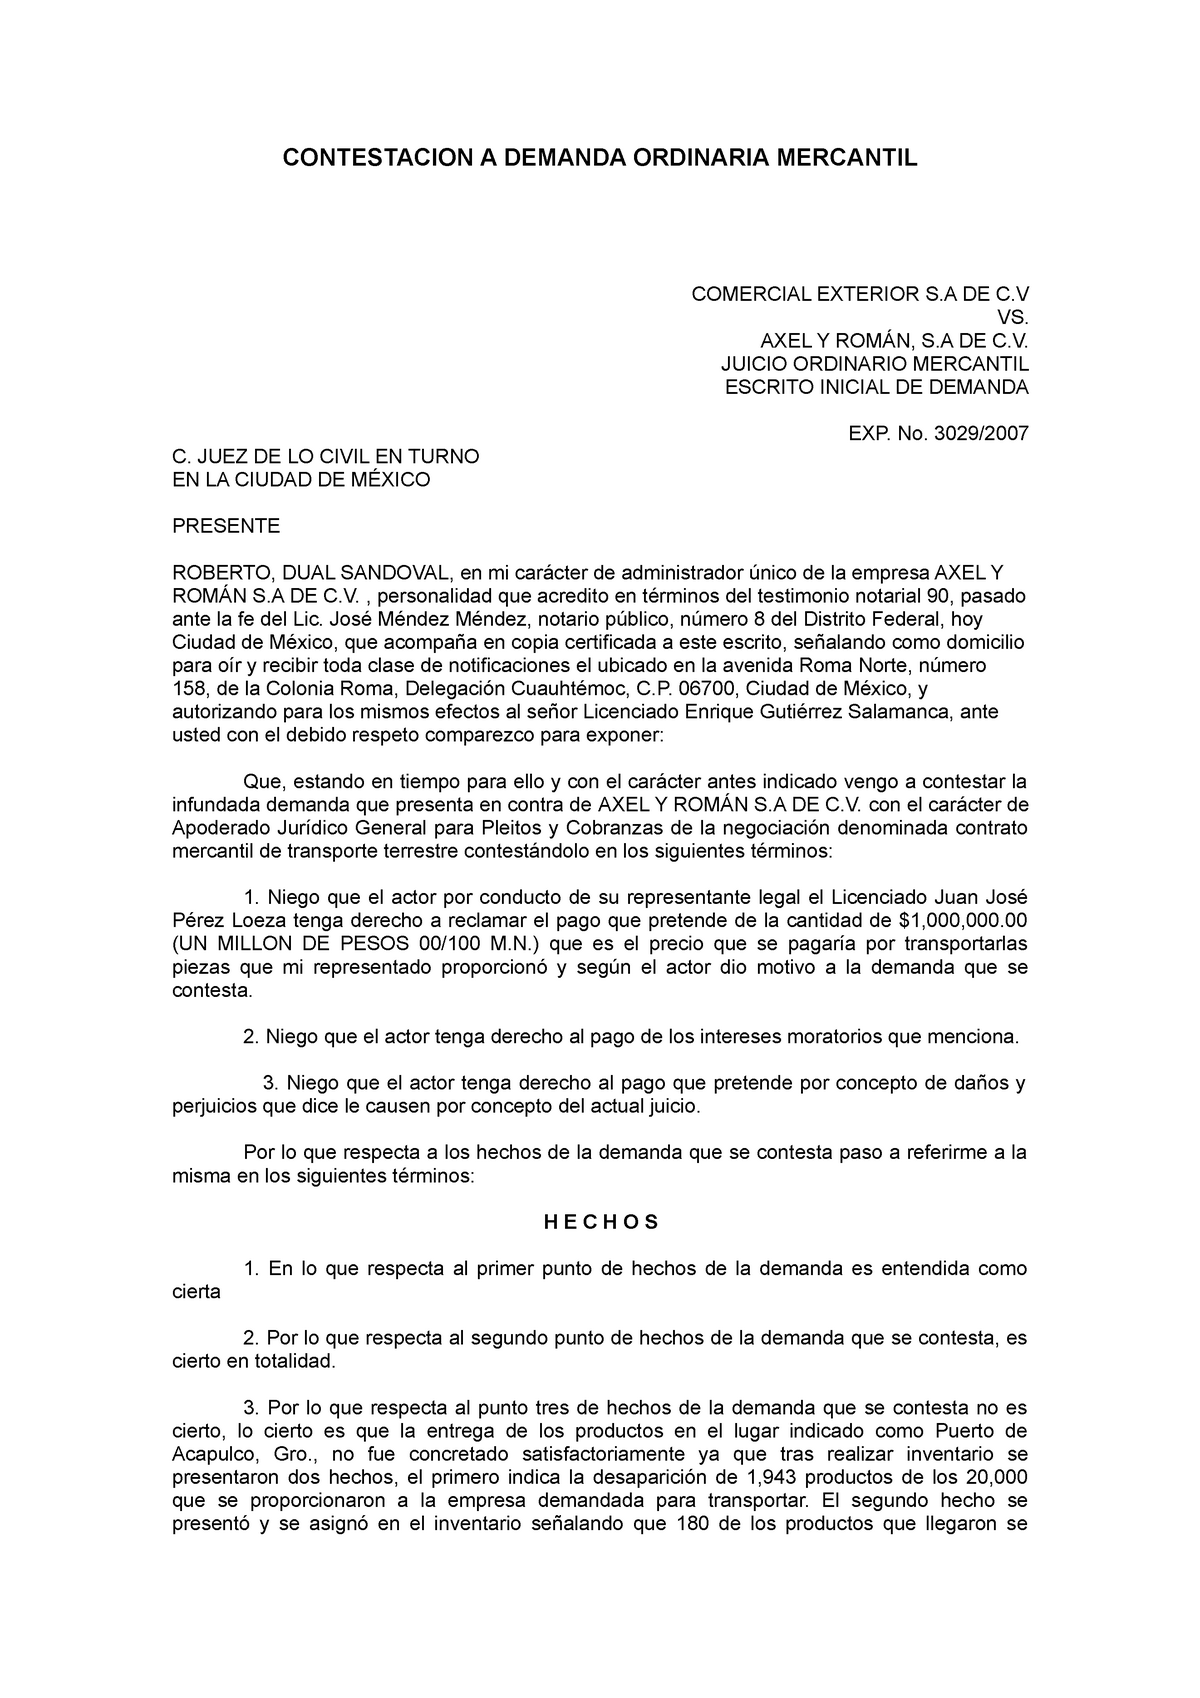 Contestacion a demanda ordinaria mercantil - CONTESTACION A DEMANDA  ORDINARIA MERCANTIL COMERCIAL - Studocu